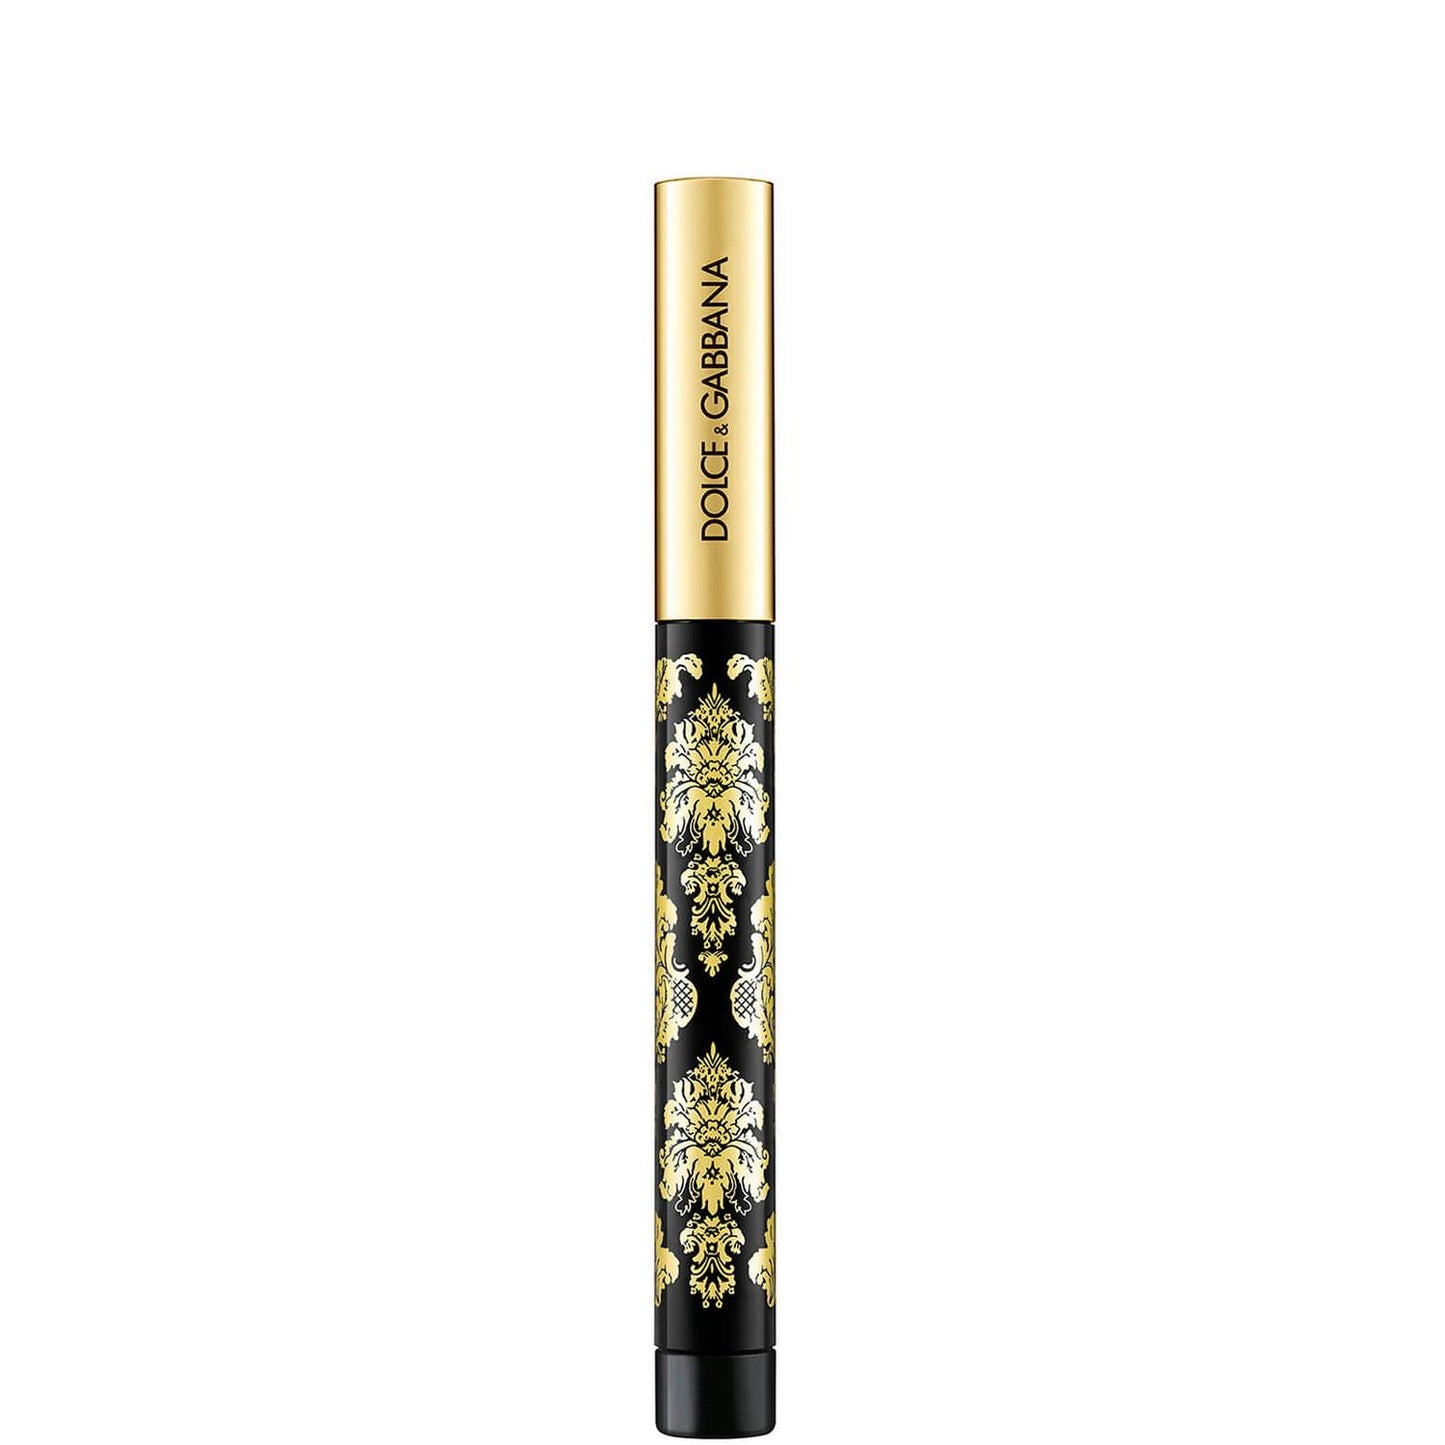 Dolce&Gabbana Intenseyes Creamy Eyeshadow Stick 14g